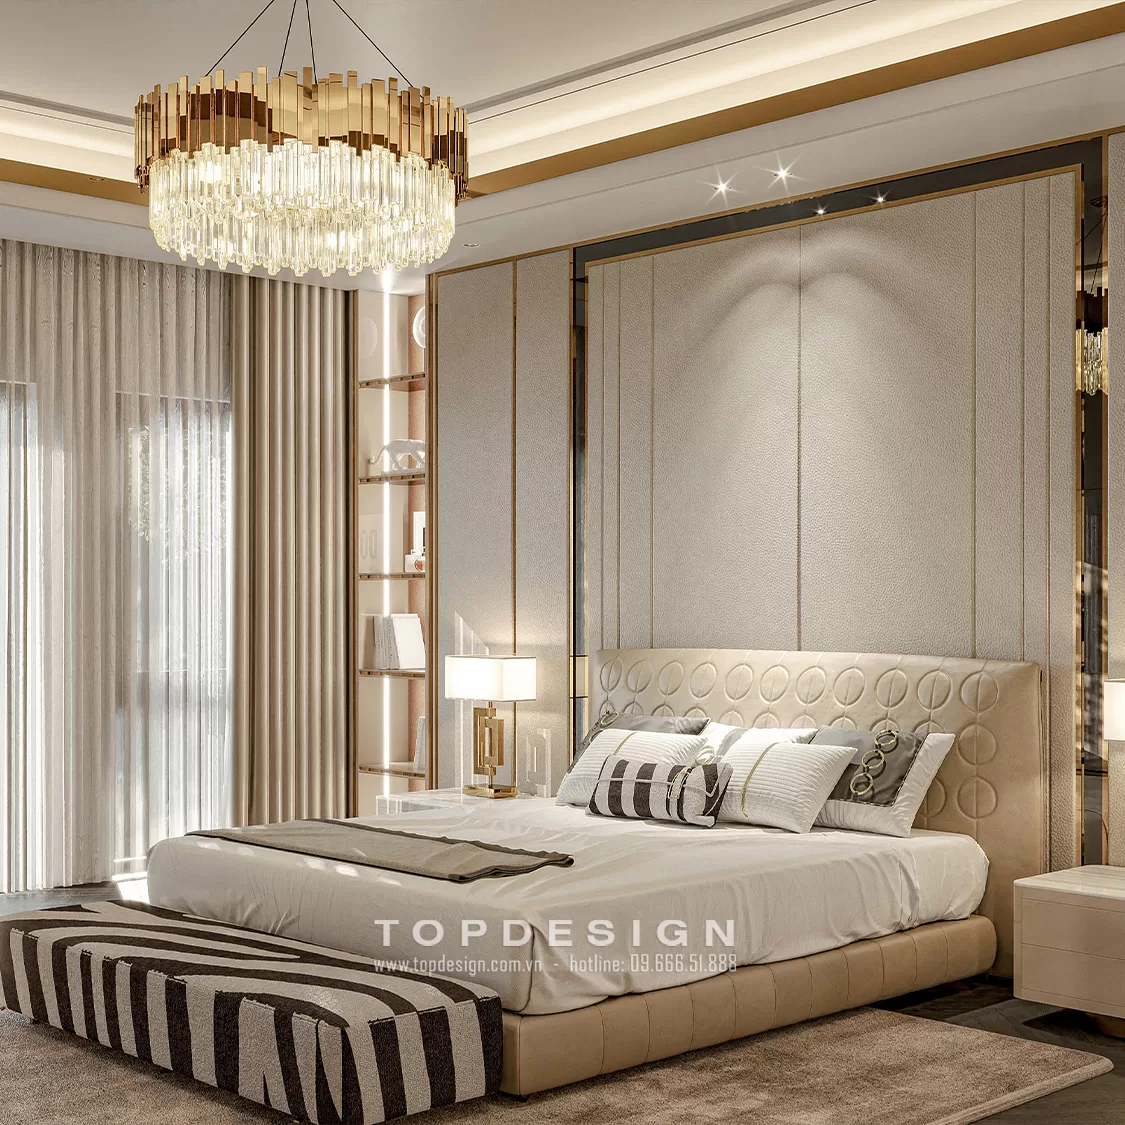 Thiết kế nội thất biệt thự phong cách tân cổ điển - TOPDESIGN - 16